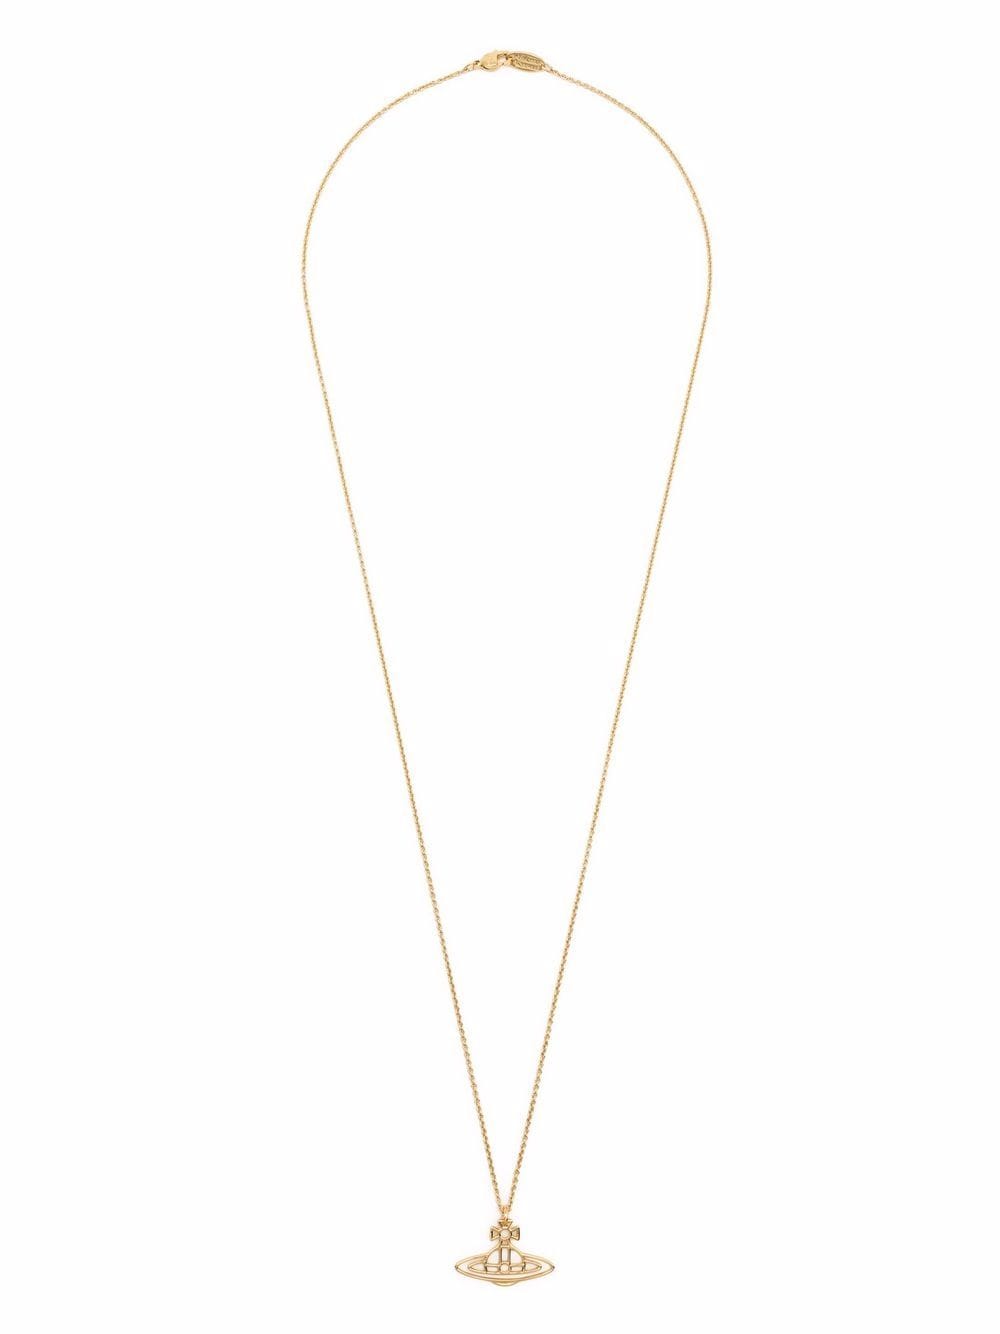 Vivienne Westwood Orb Pendant Necklace - Farfetch